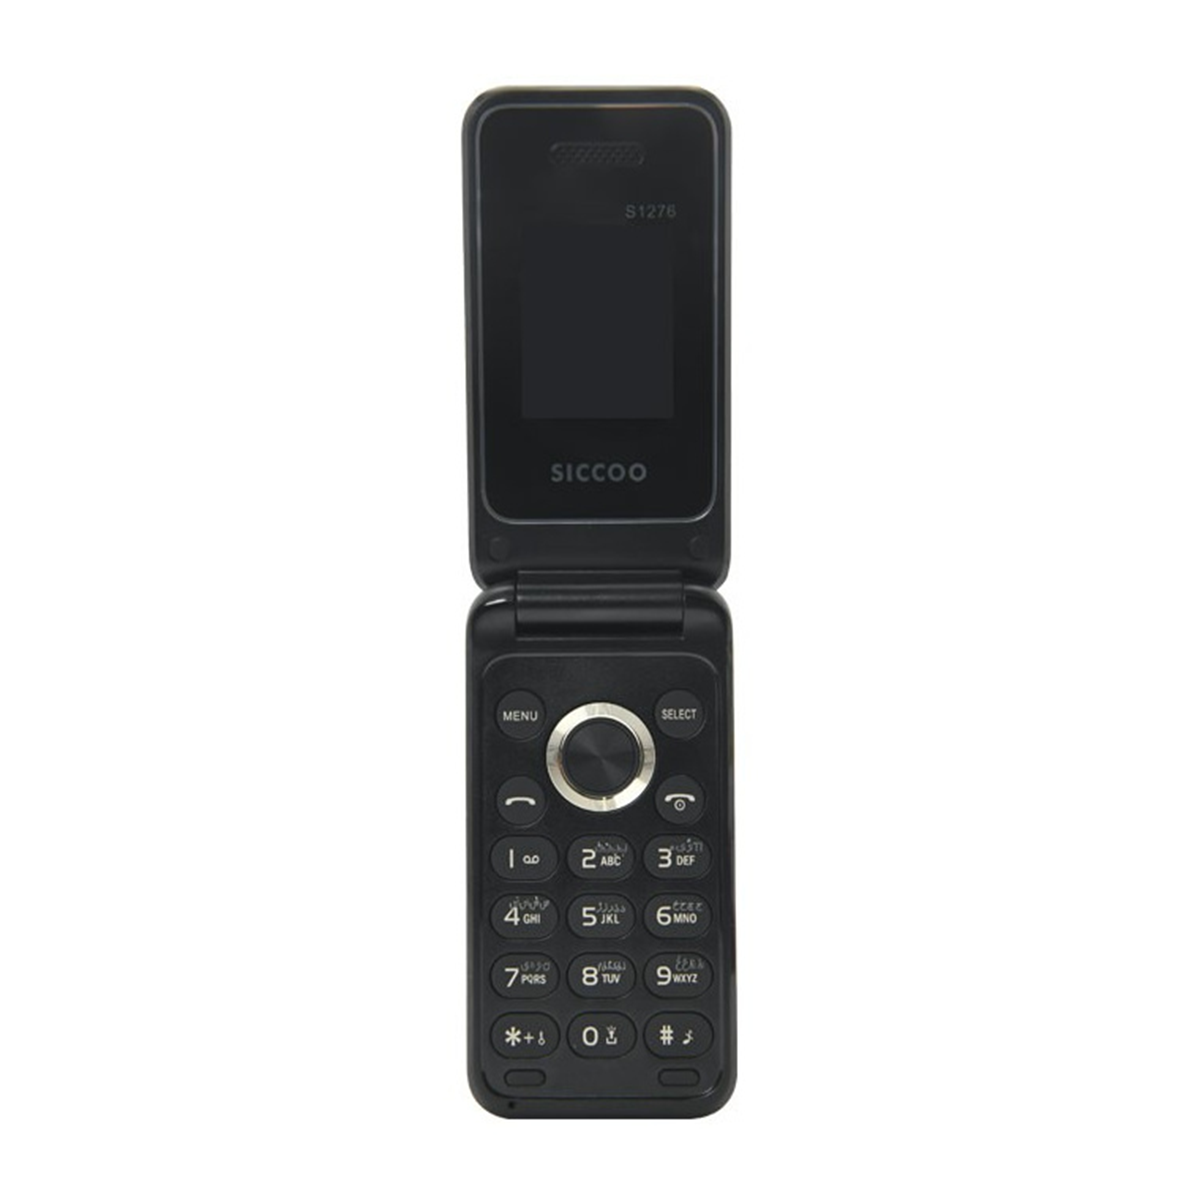 گوشی موبایل سیکو مدل S1276 دو سیم کارت